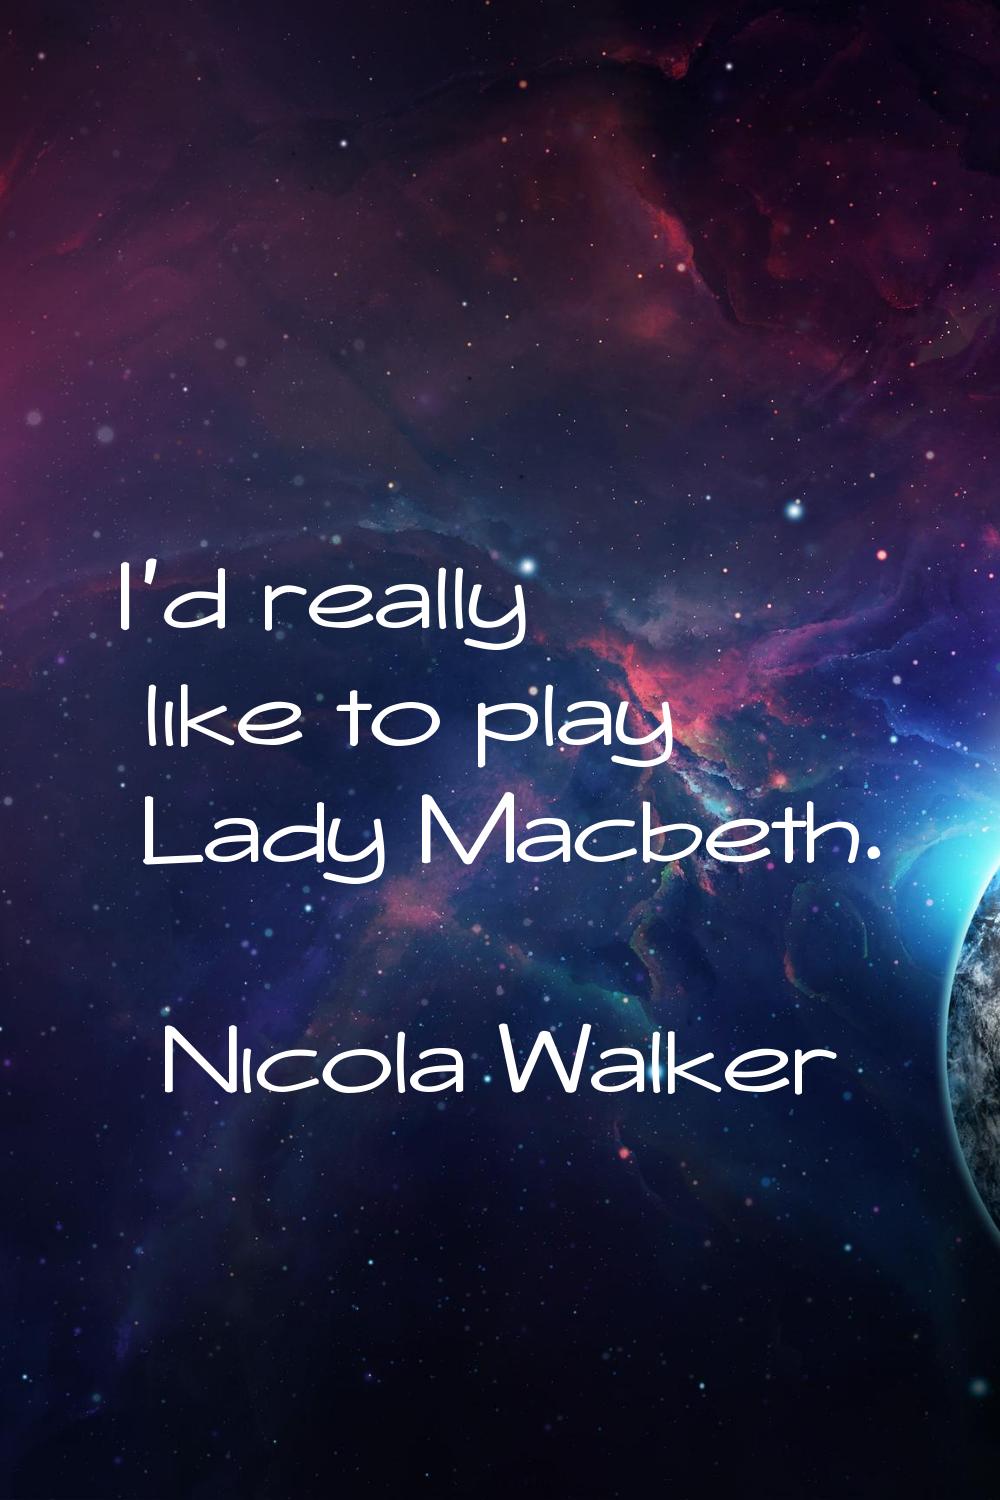 I'd really like to play Lady Macbeth.